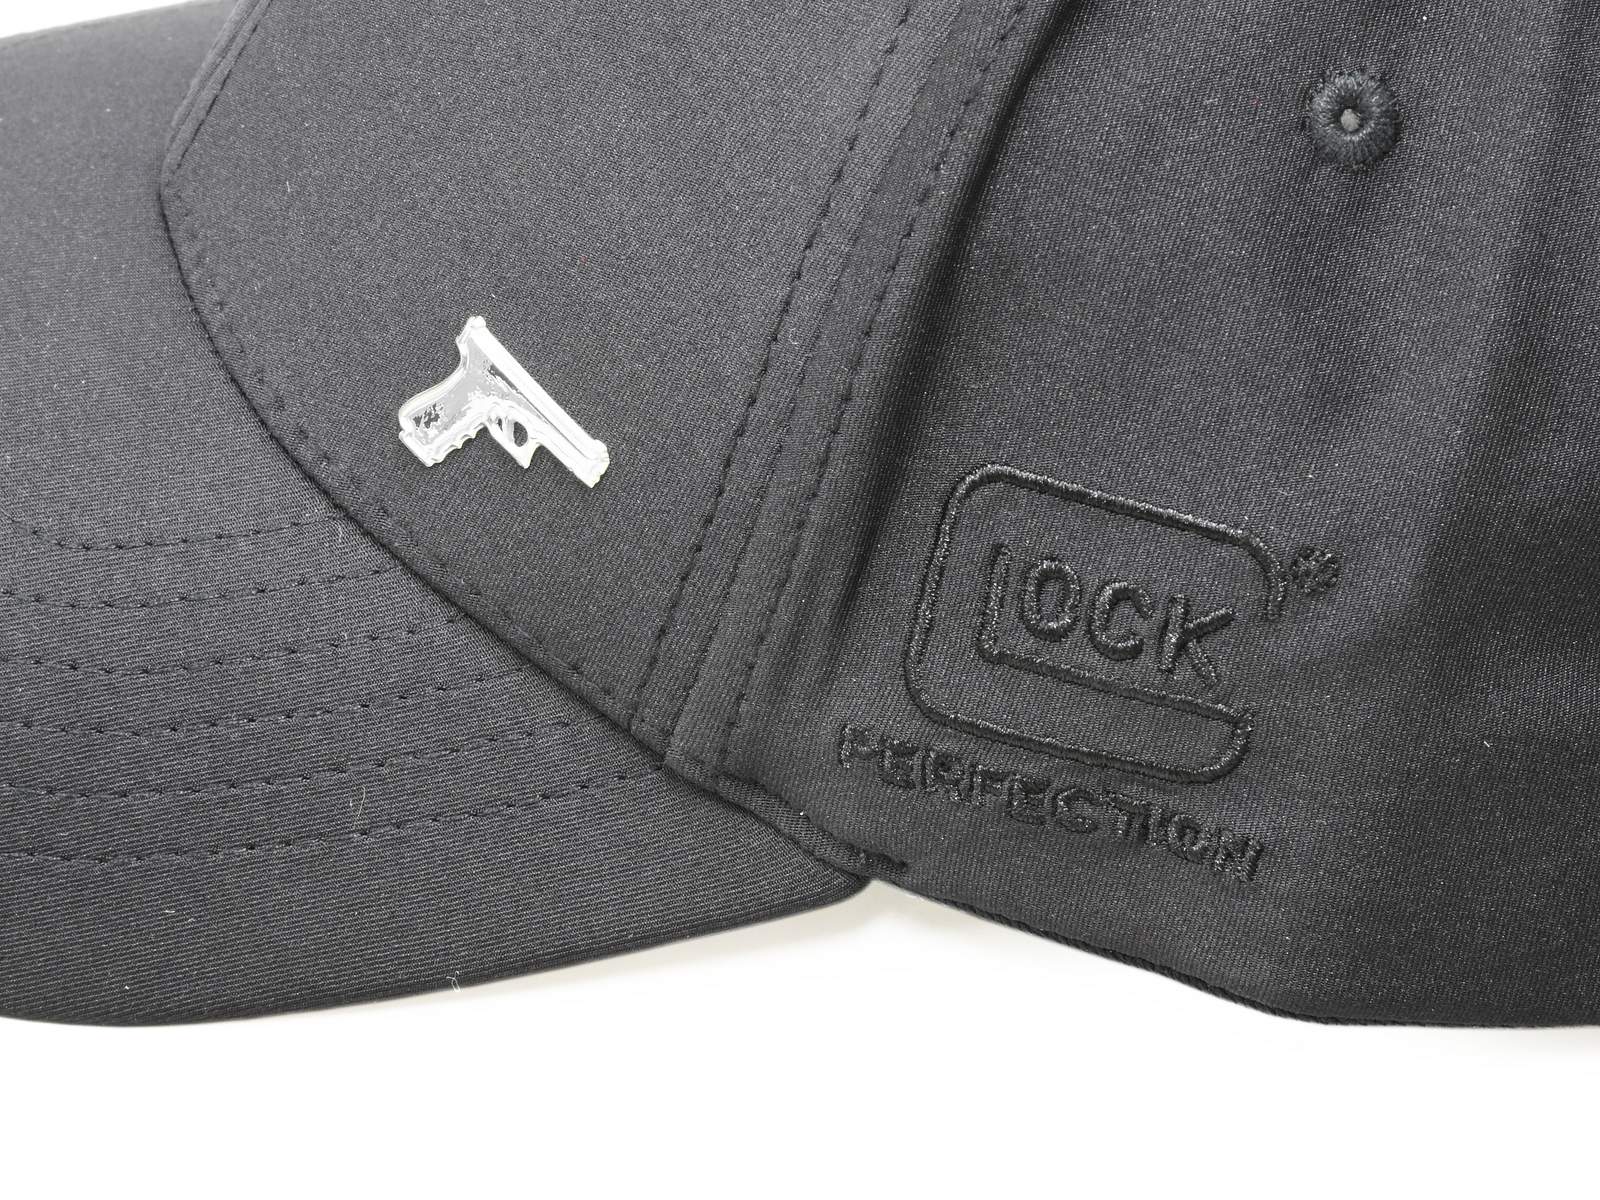 GLOCK HeadWear ベースボールキャップ BLACK SURPLEX HAT (Black)